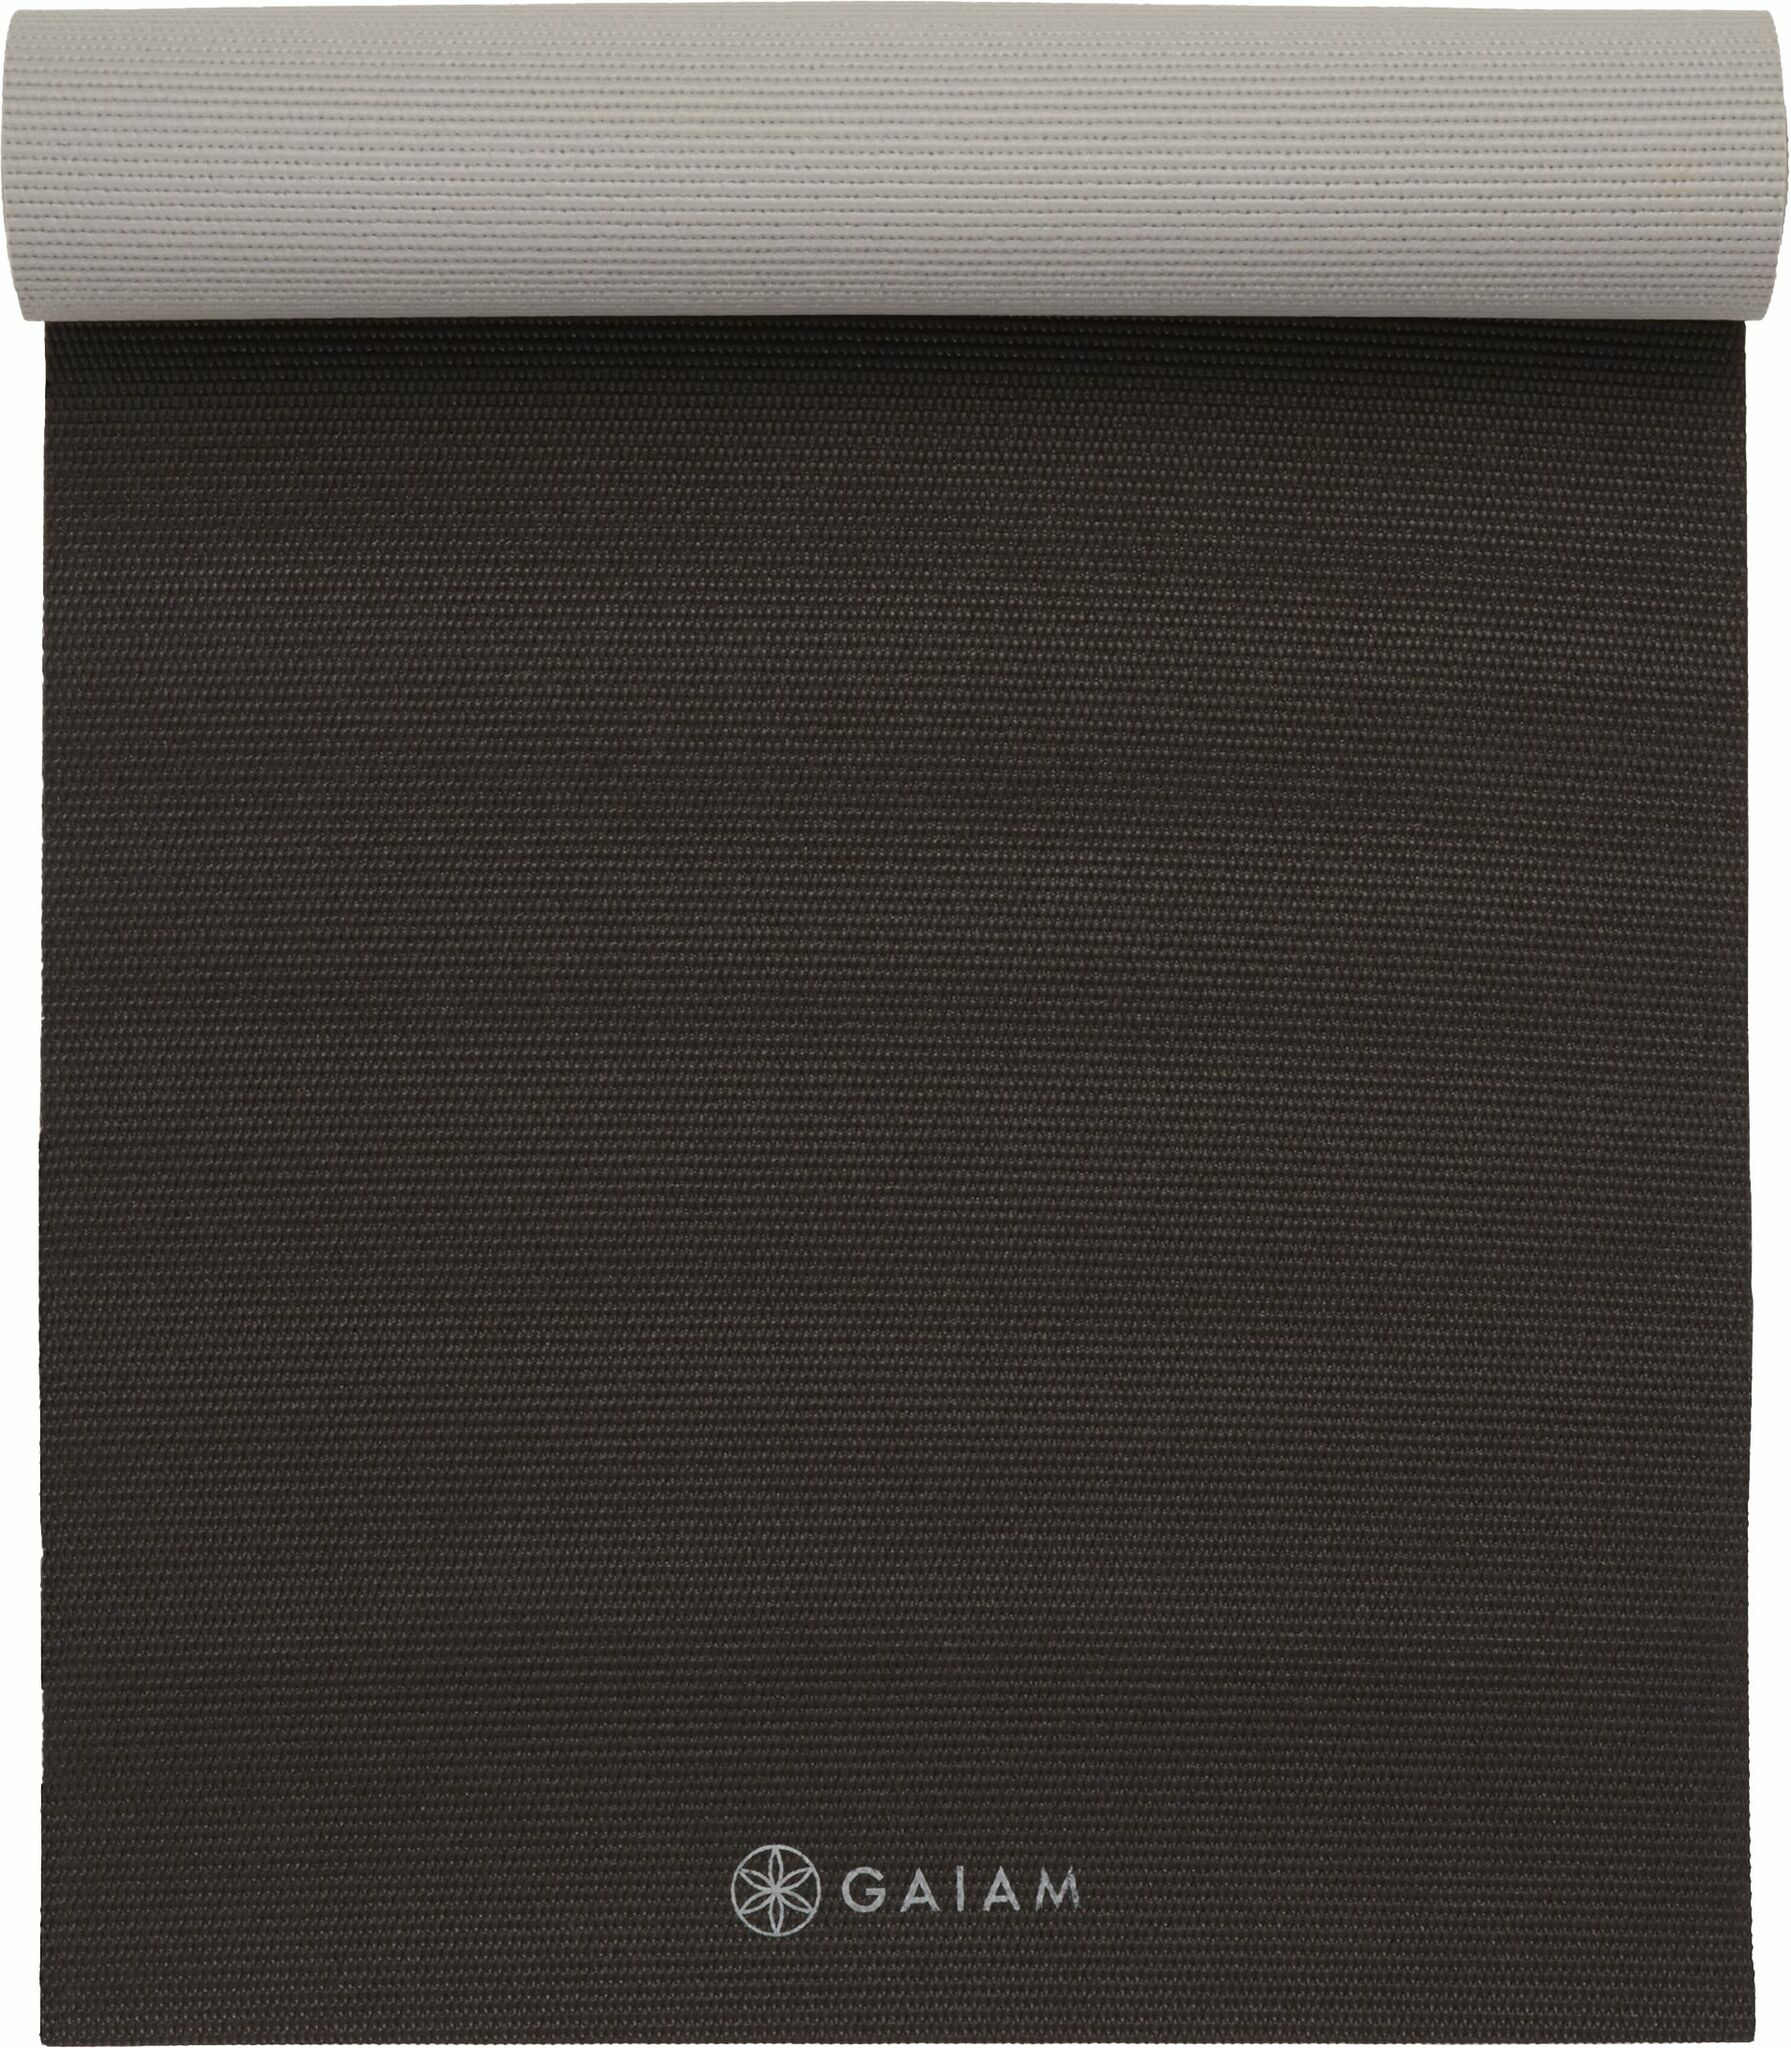 Gaiam Granite/Storm Reversible Premium Yoga Mat, 6 mm –